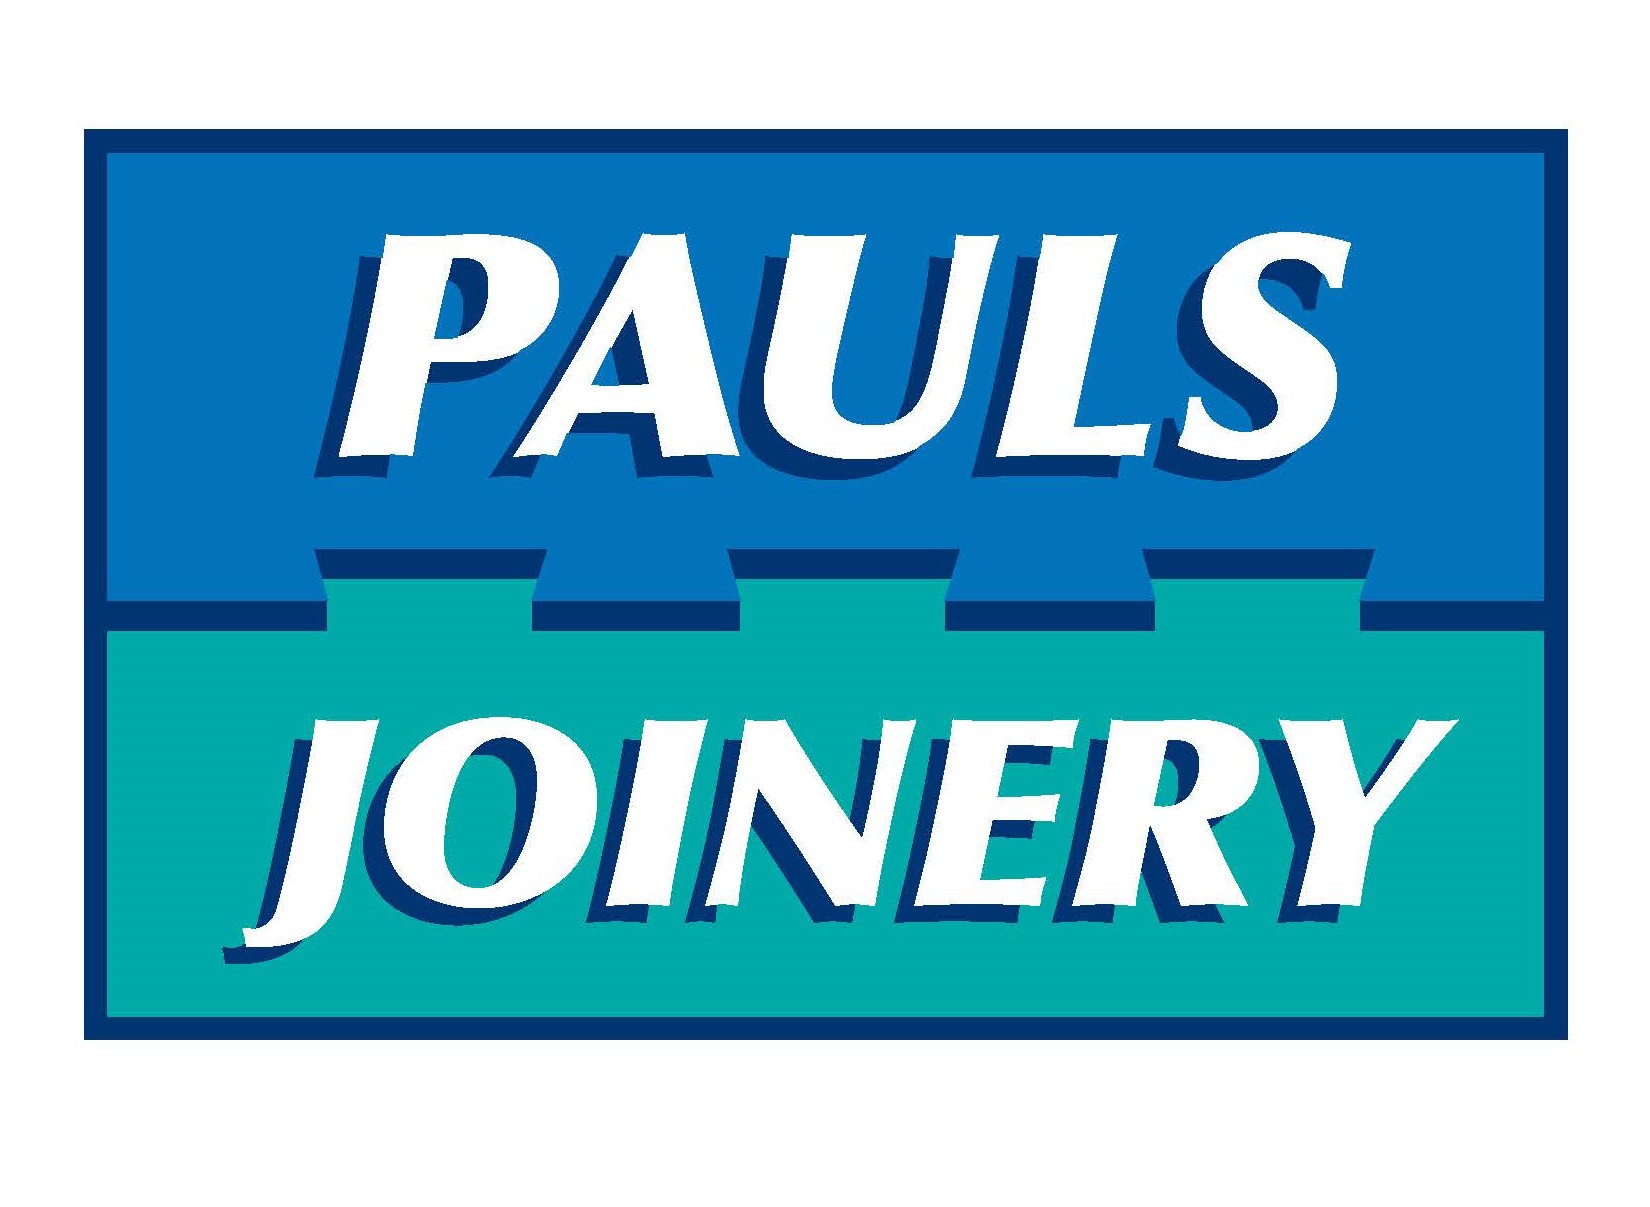 Pauls’ Joinery Ltd logo